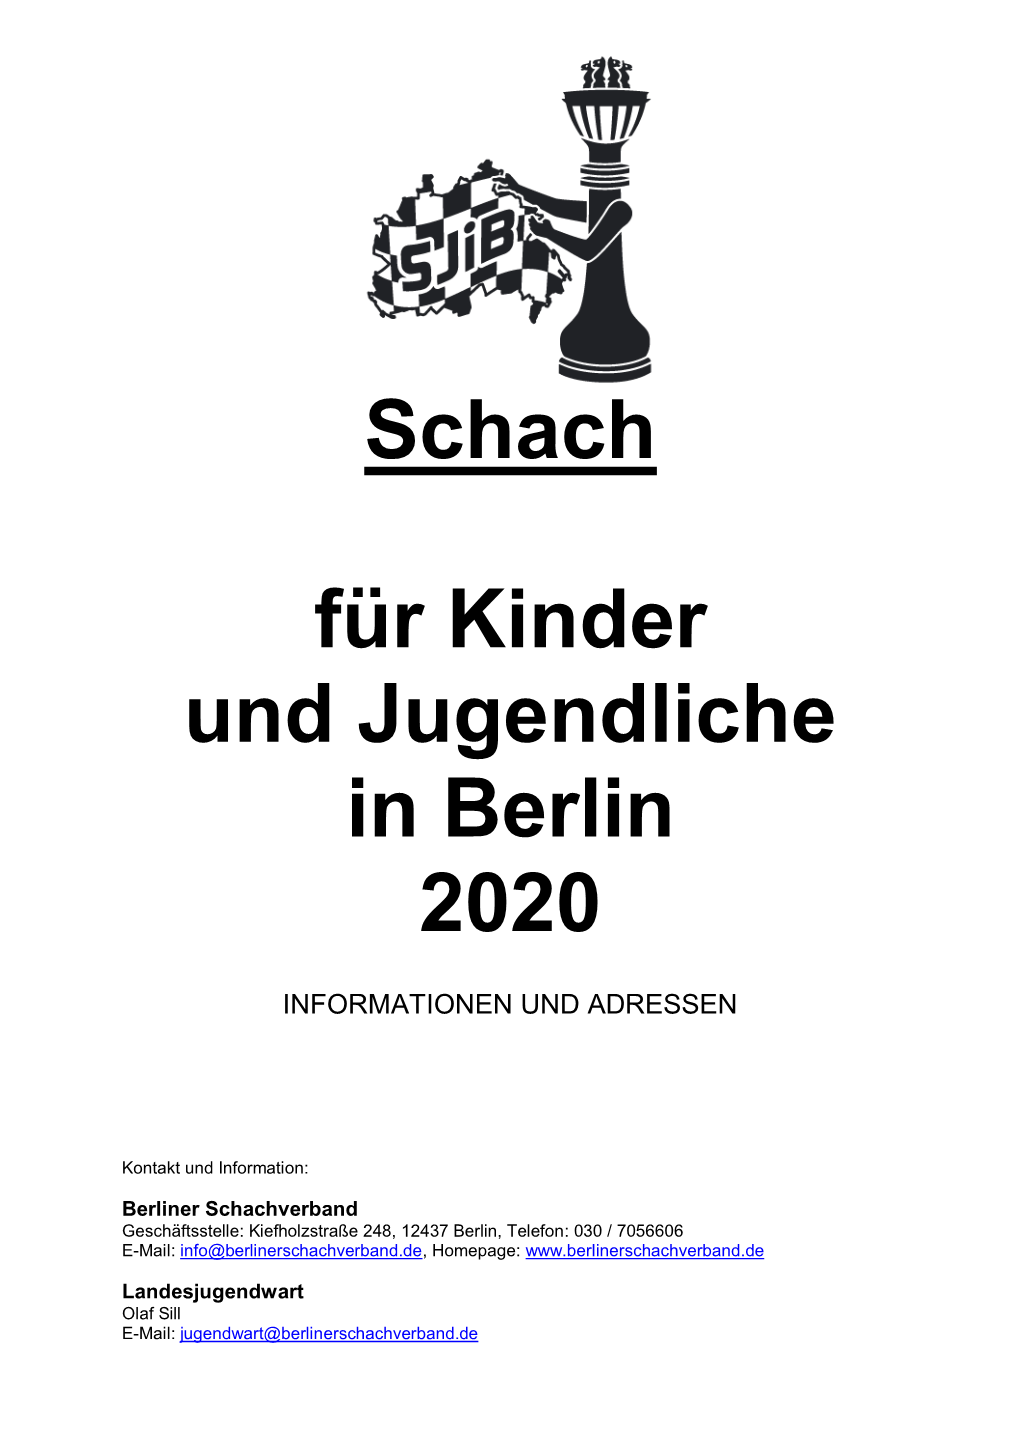 Schach Für Jugendliche Und Kinder in Berlin